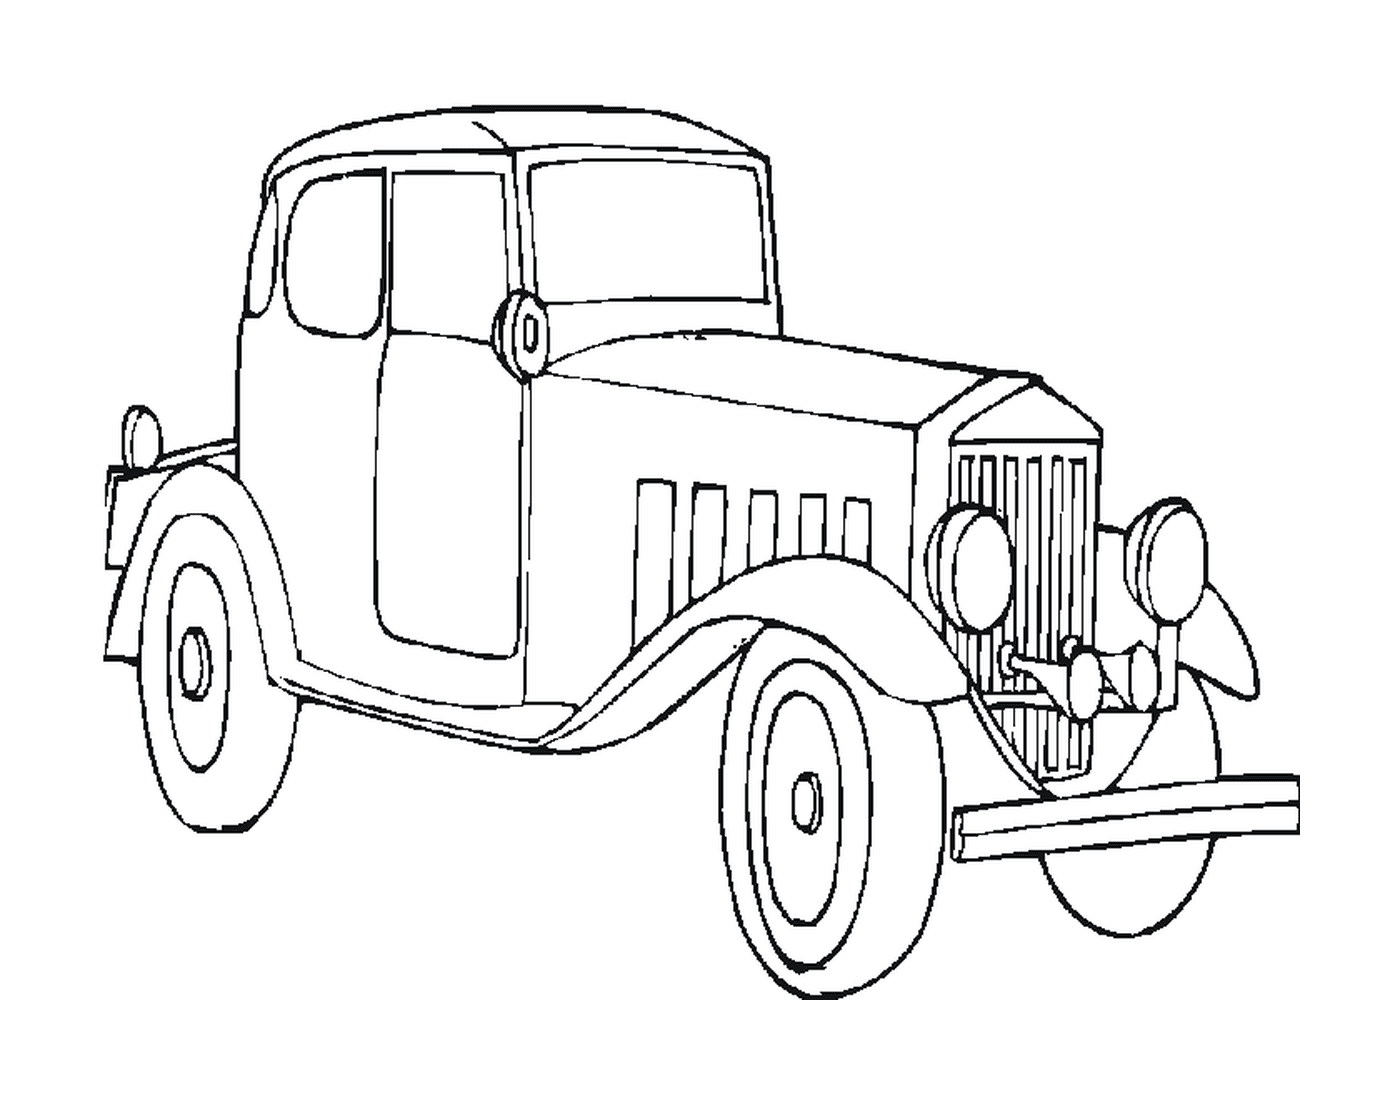  Altes Auto gezeichnet 